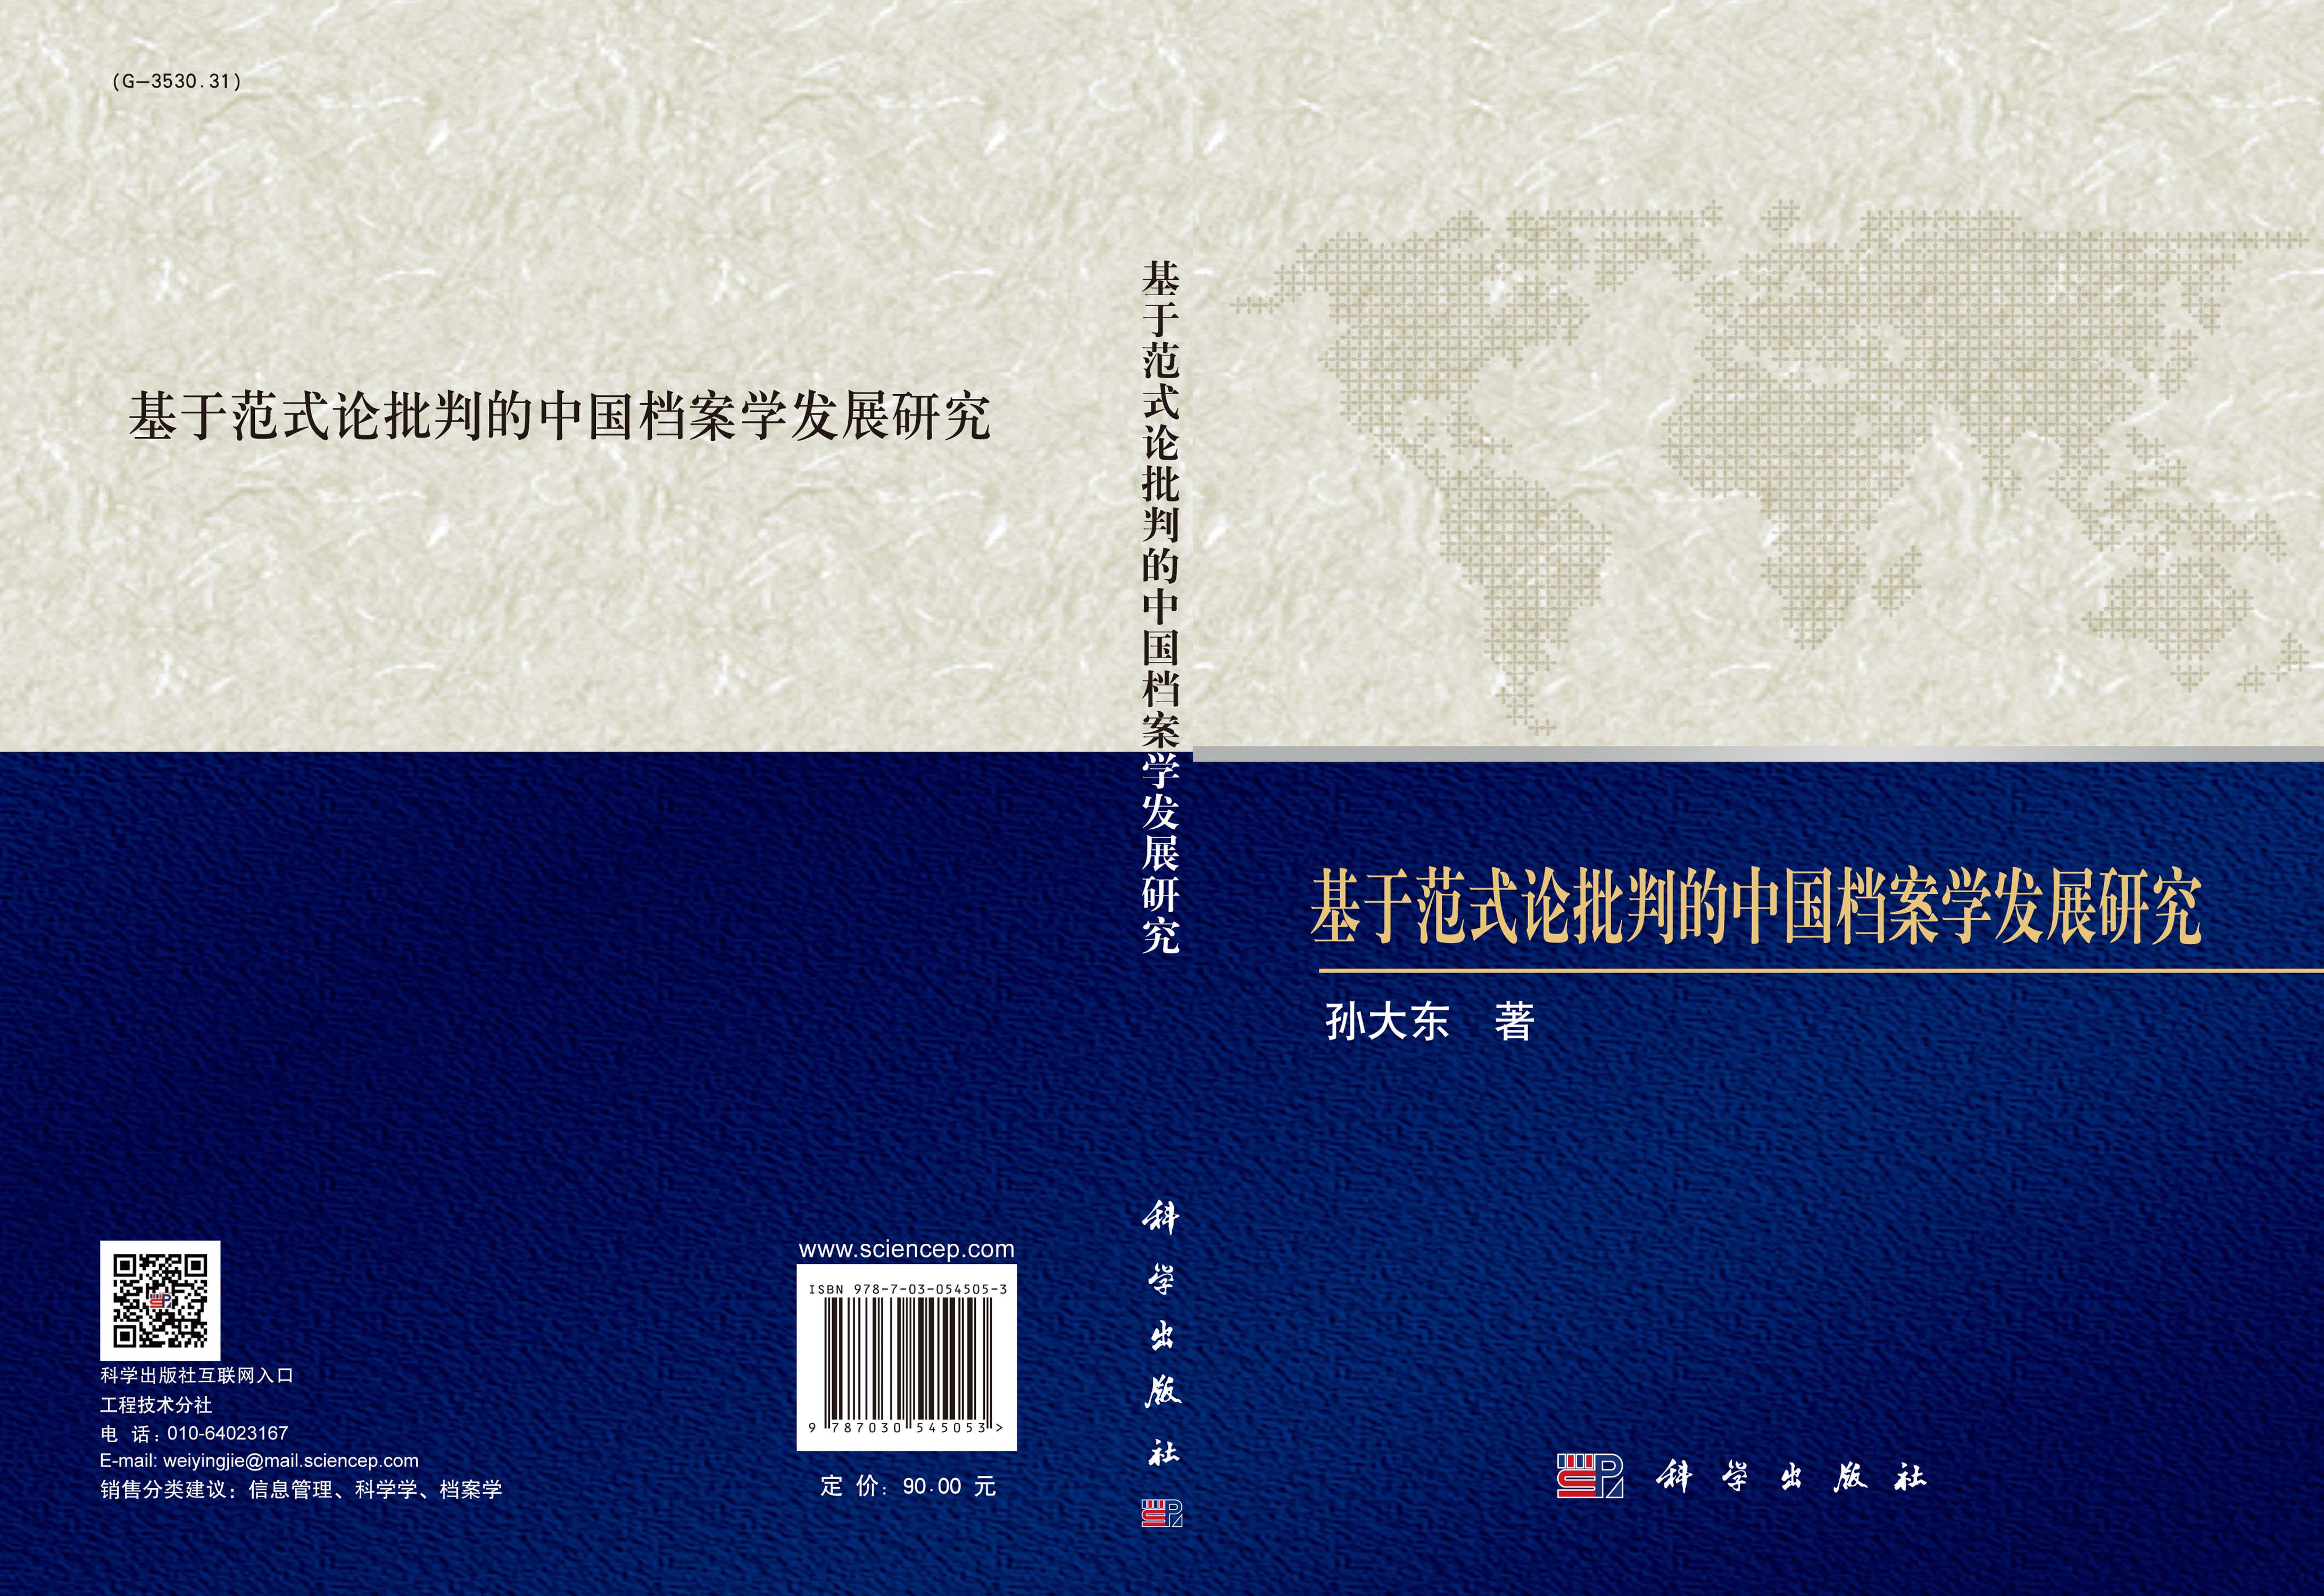 基于范式论批判的中国方案学发展研究